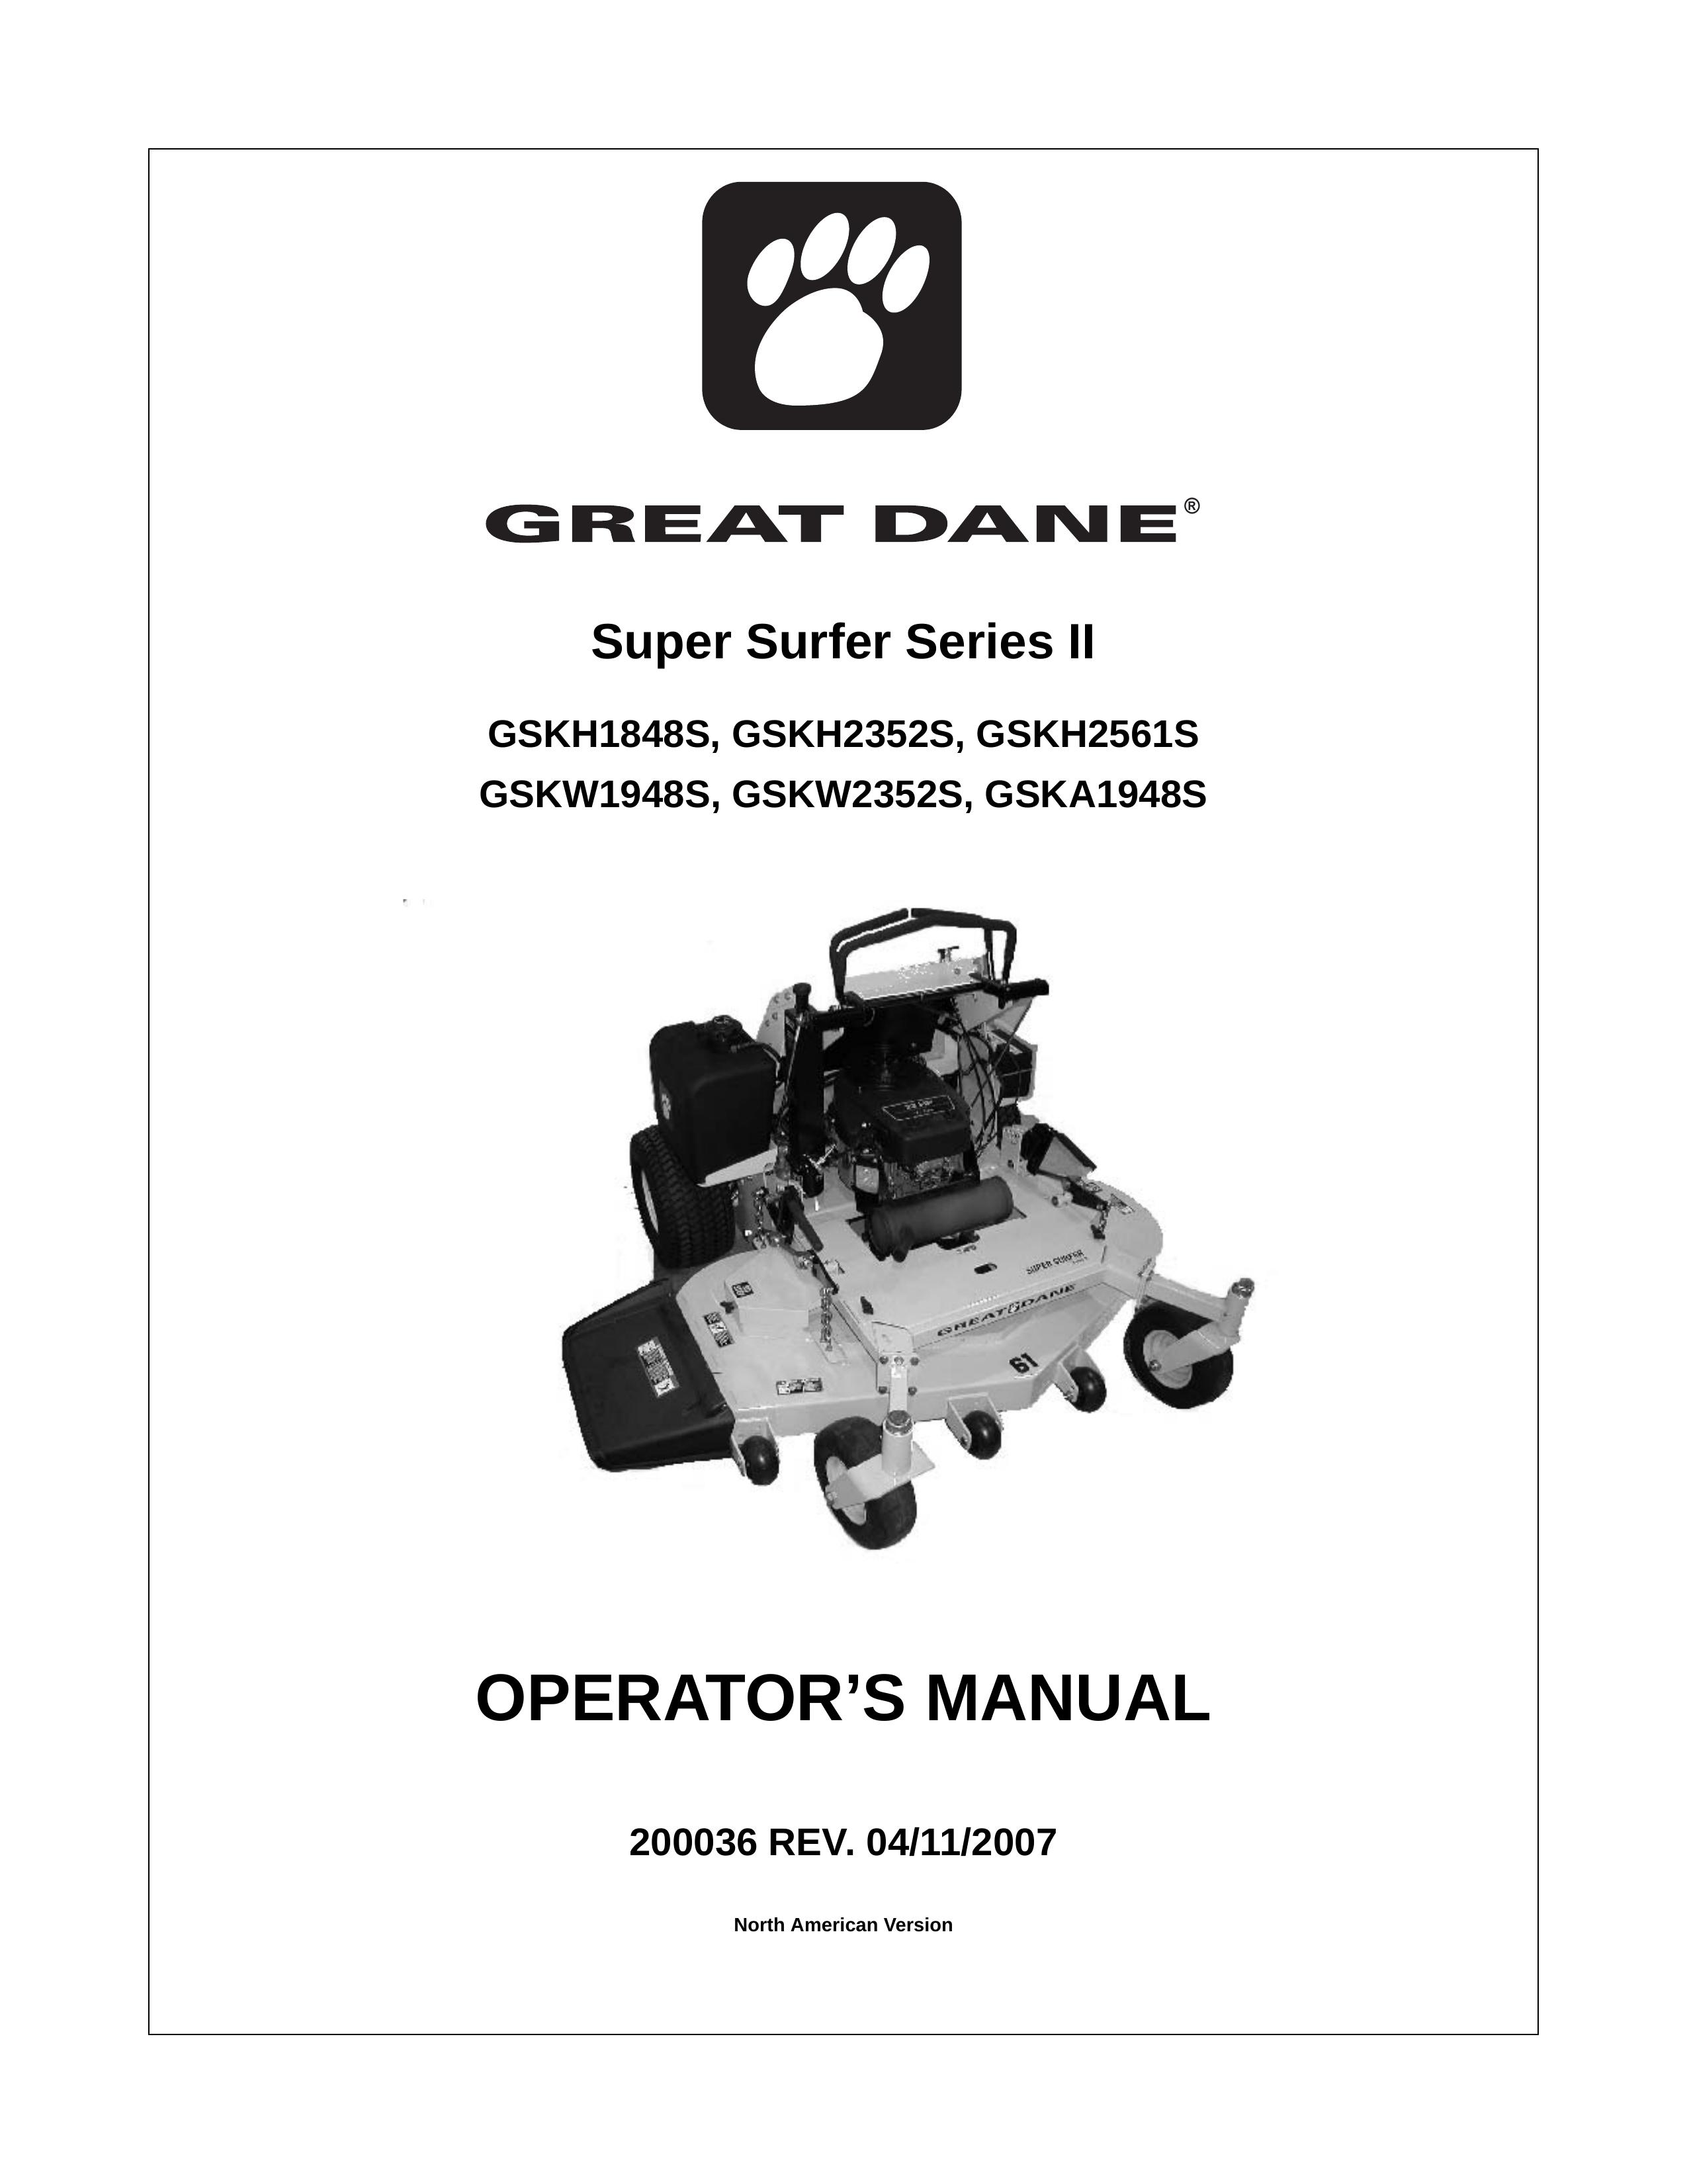 Great Dane GSKH2561S Lawn Mower User Manual